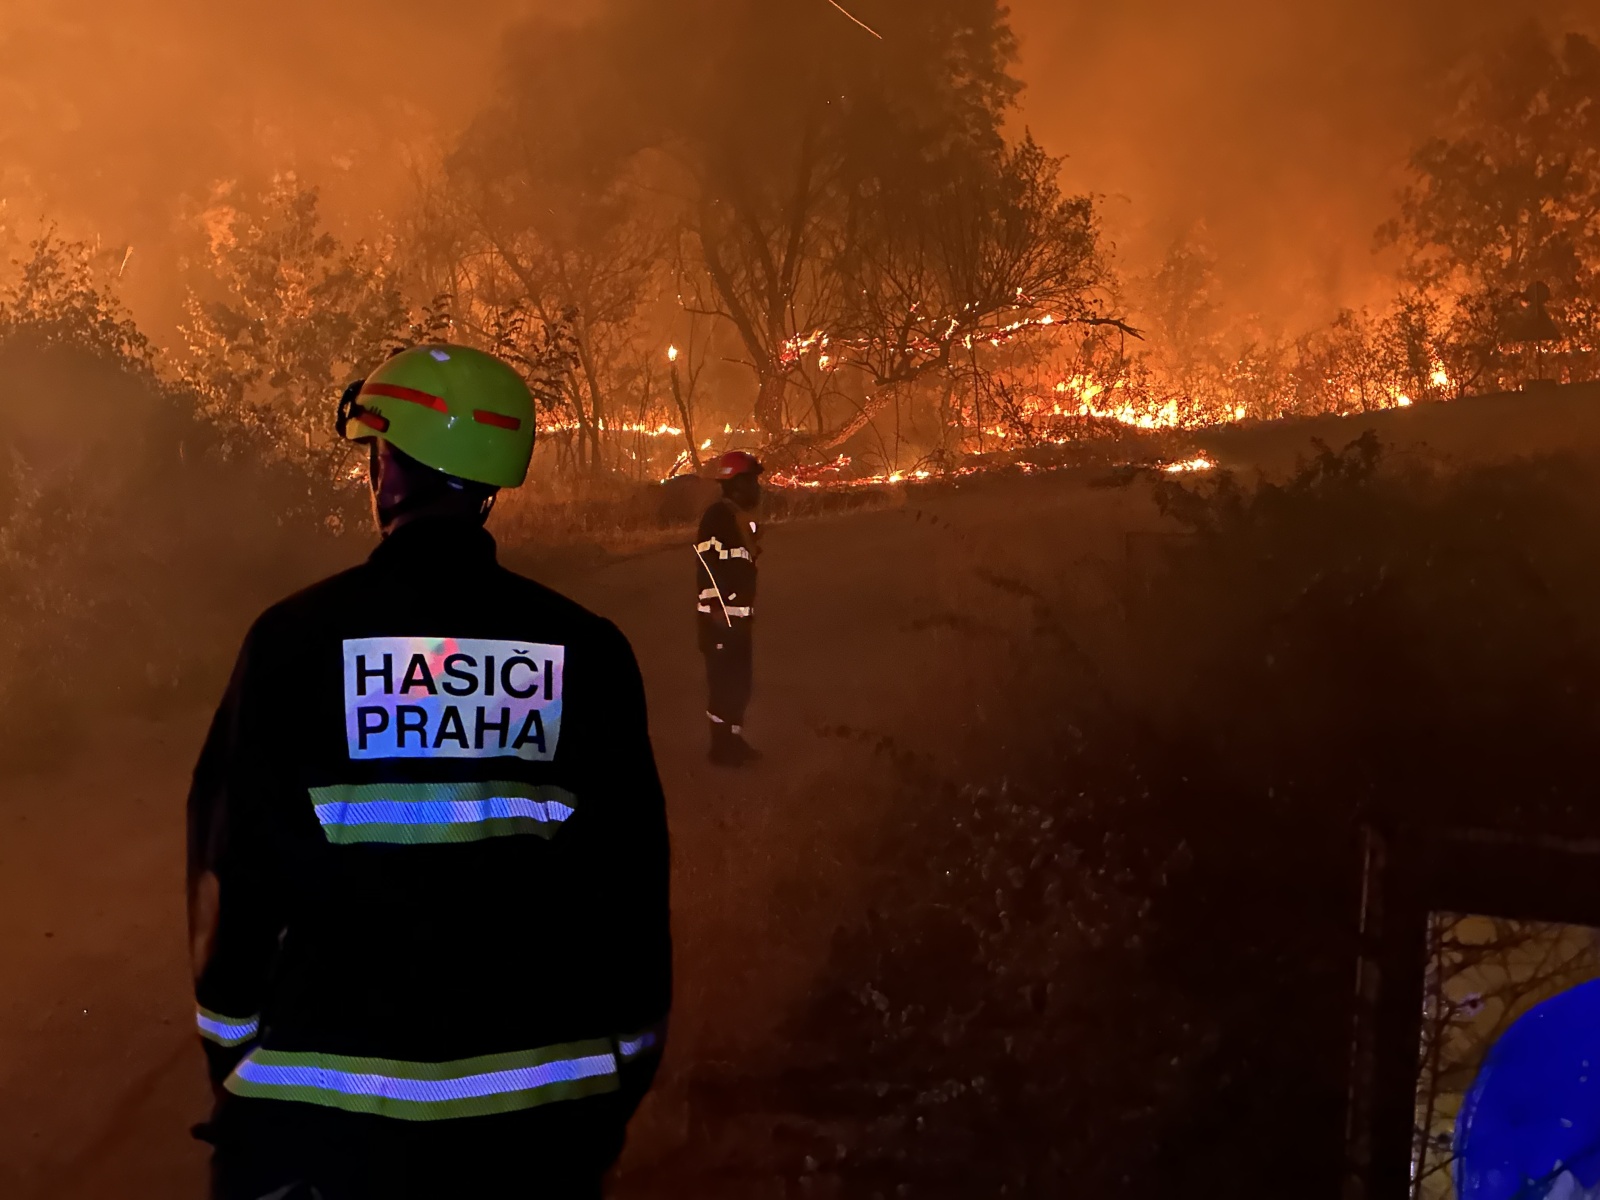 078-Pomoc českých hasičů při požárech v Řecku.JPG